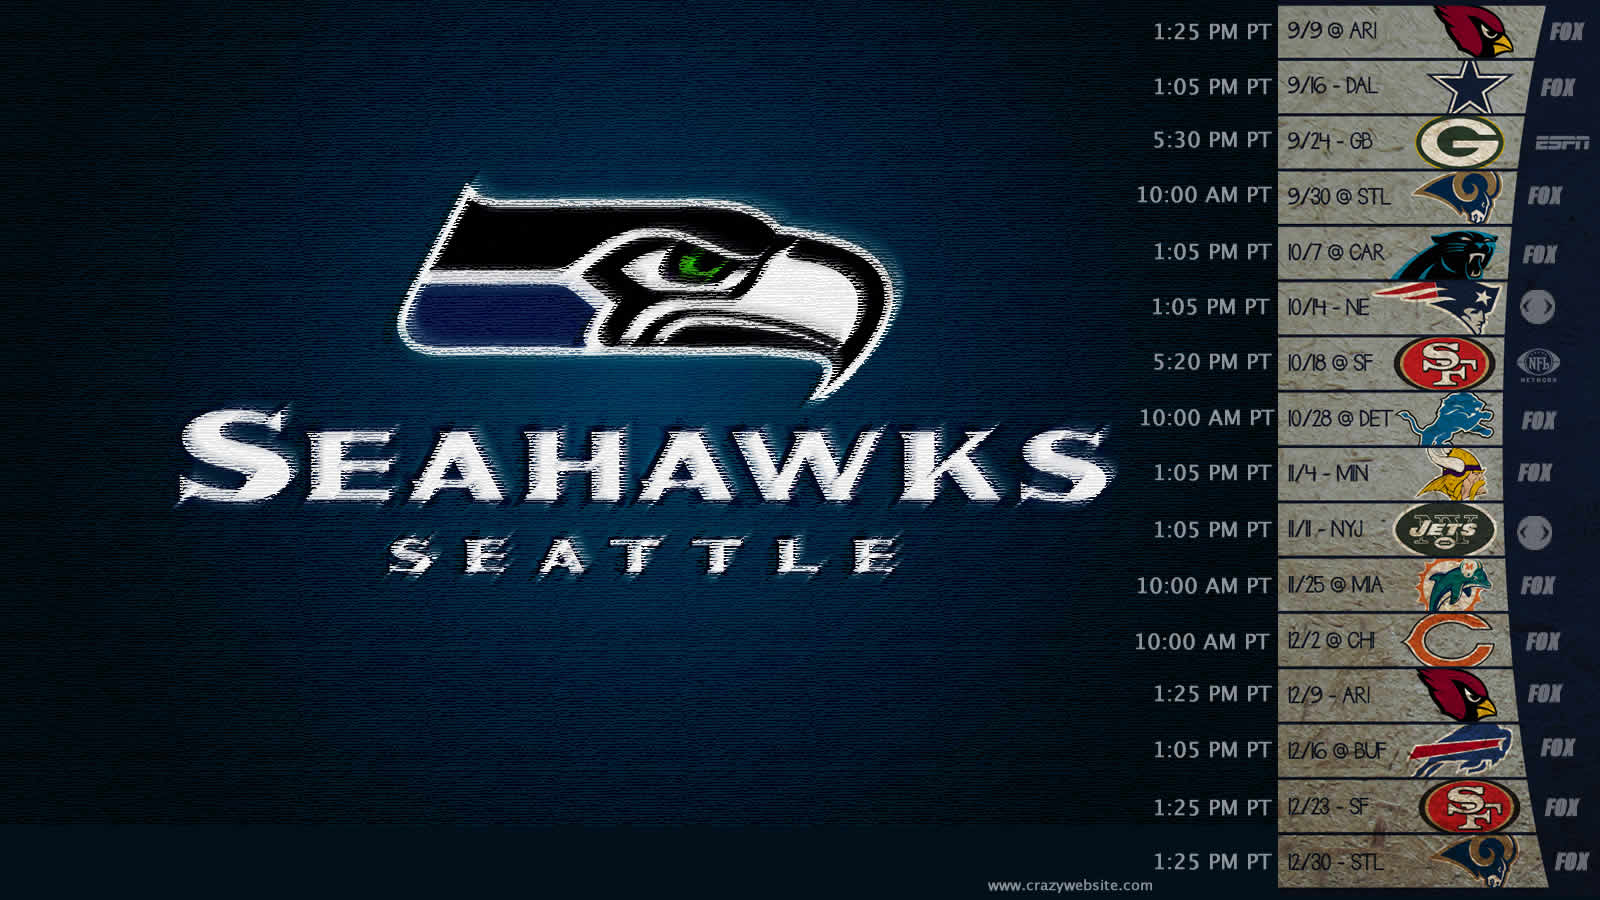 seahawks schedule 2012 wallpaper | FLI